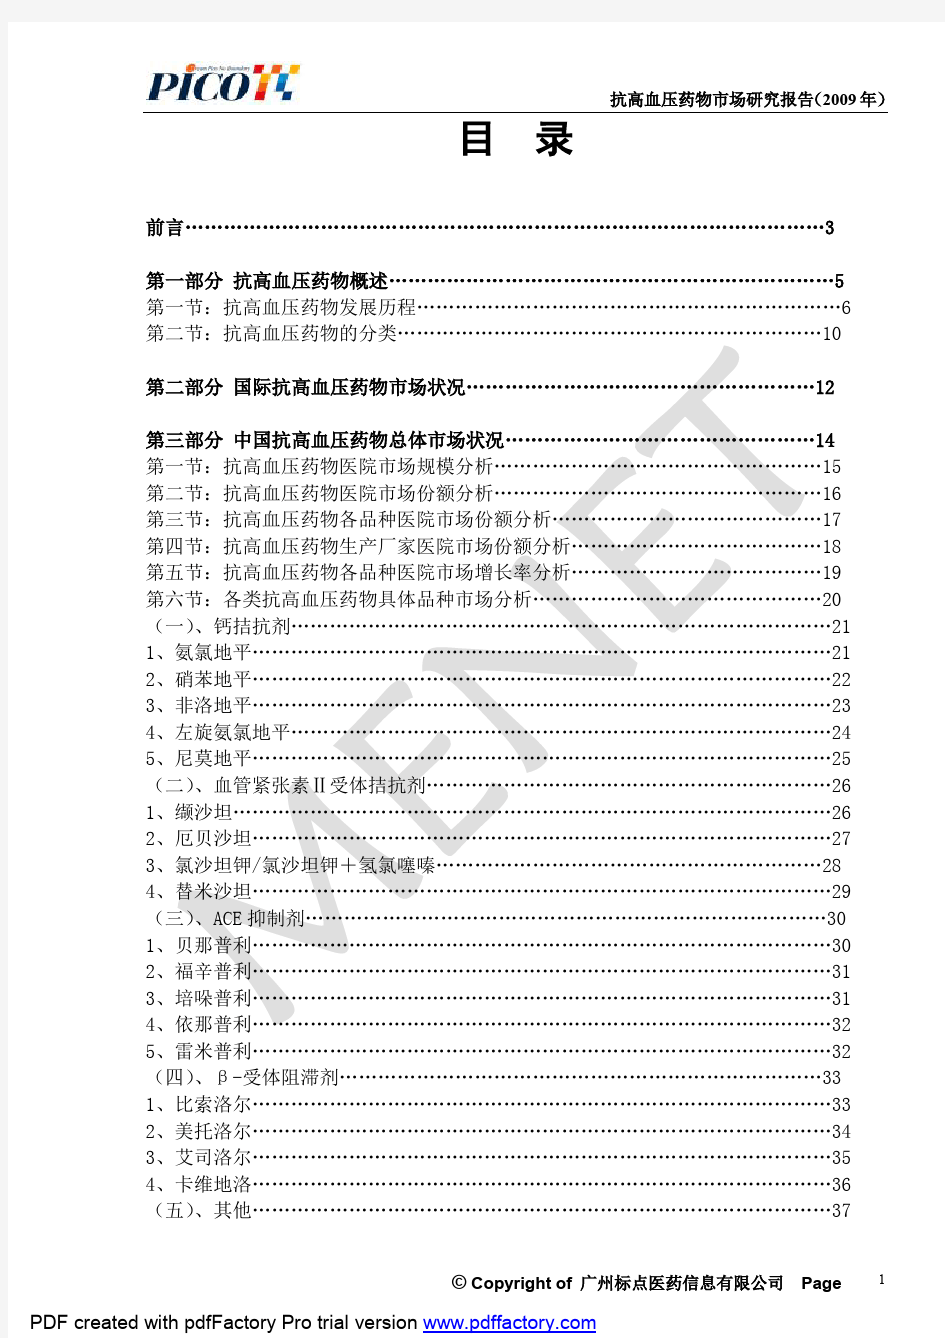 2009年中国抗高血压药物市场调查研究报告(75P)